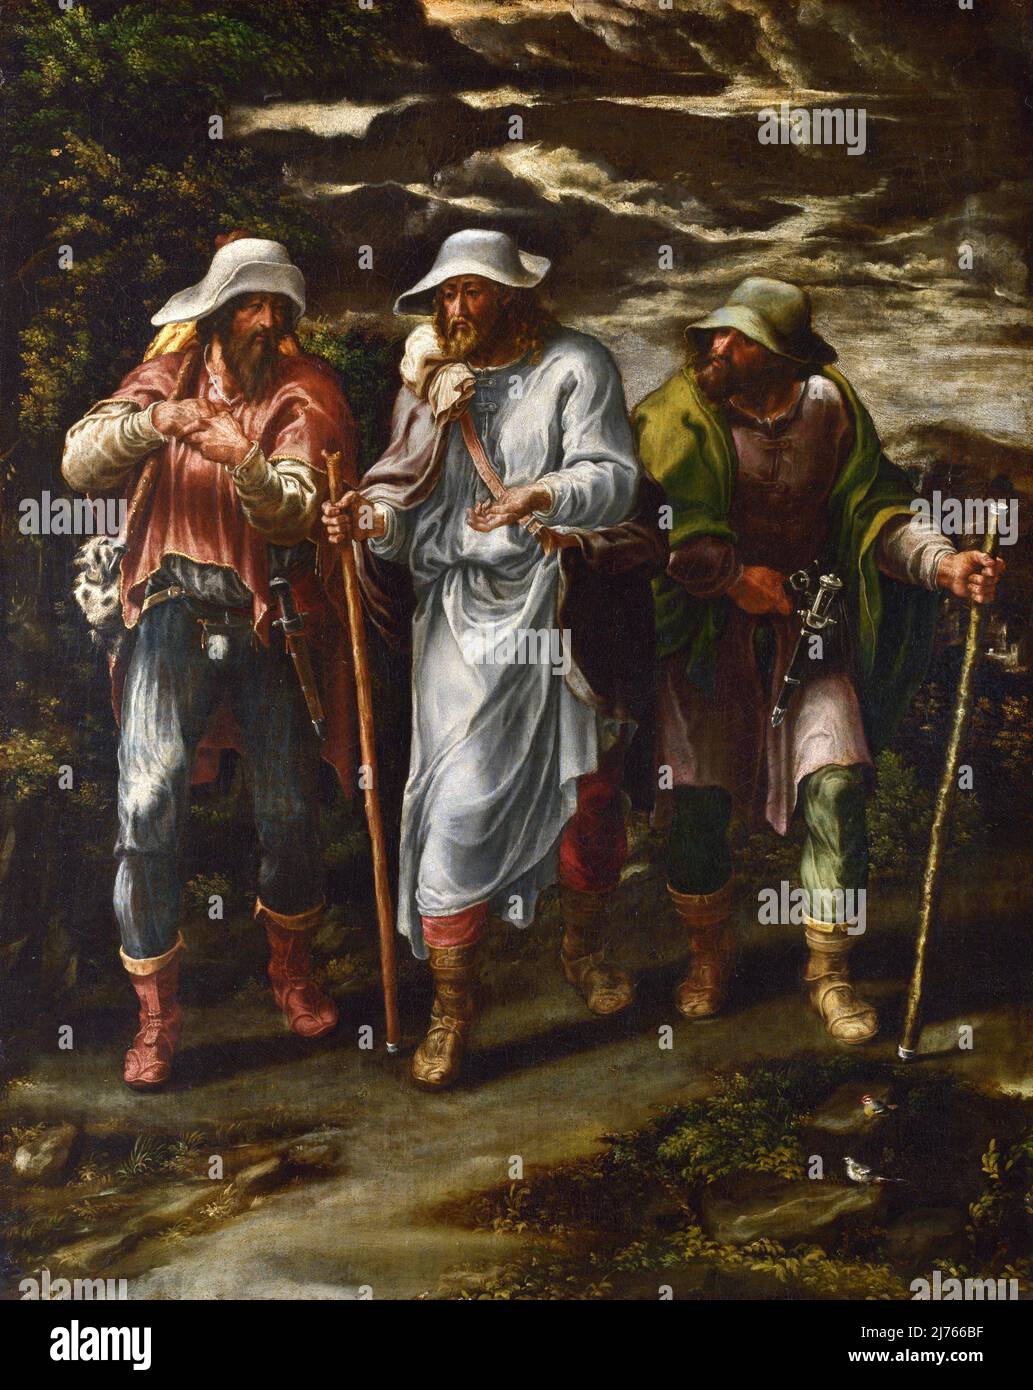 El paseo a Emaús por Lelio Orsi (1508/1511 – 1587), óleo sobre lienzo, c. 1565-75 Foto de stock